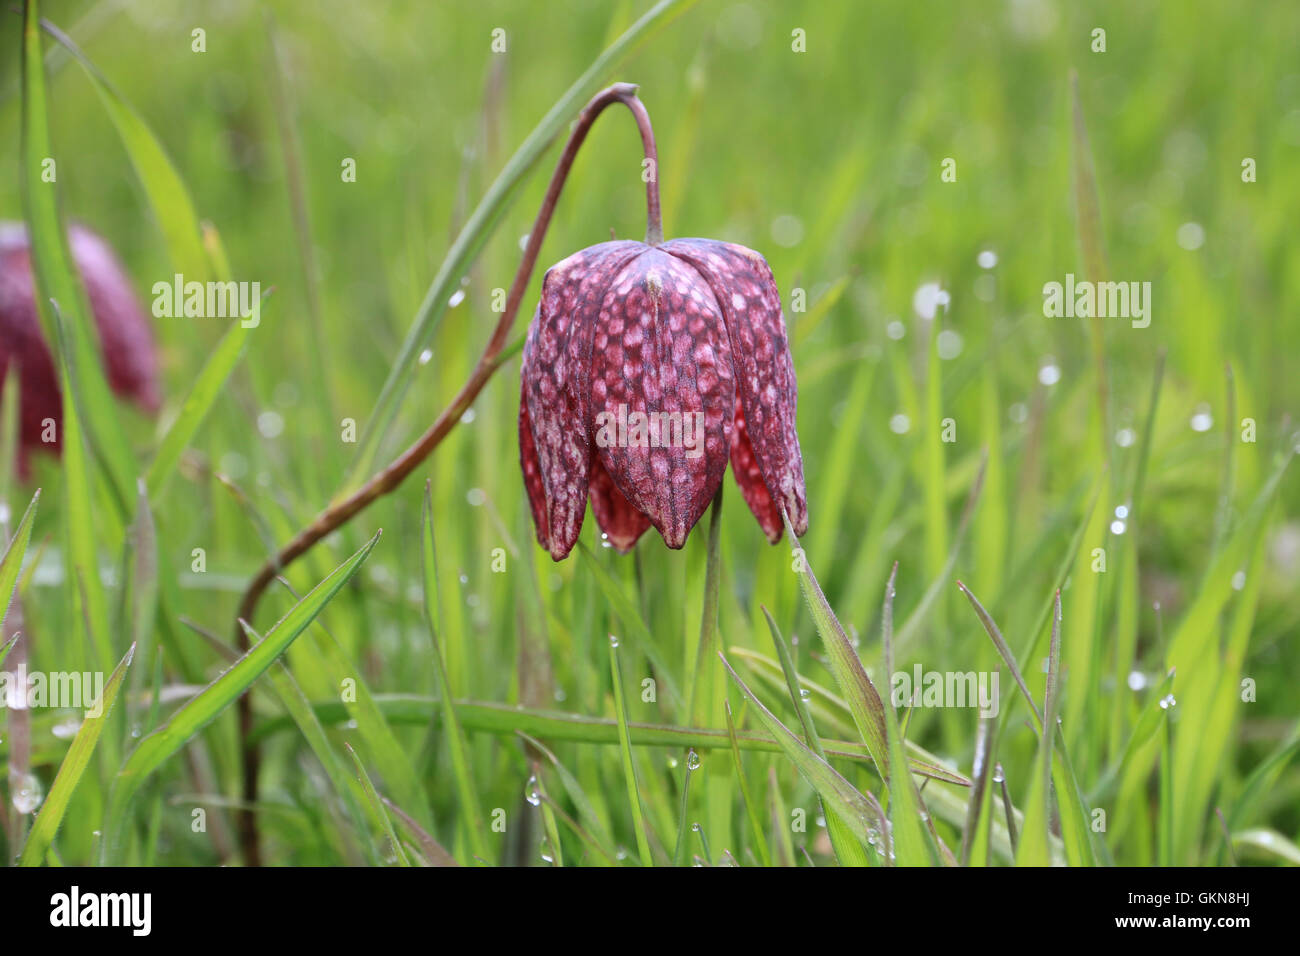 Snake's head fritillary flower with raindrops Stock Photo